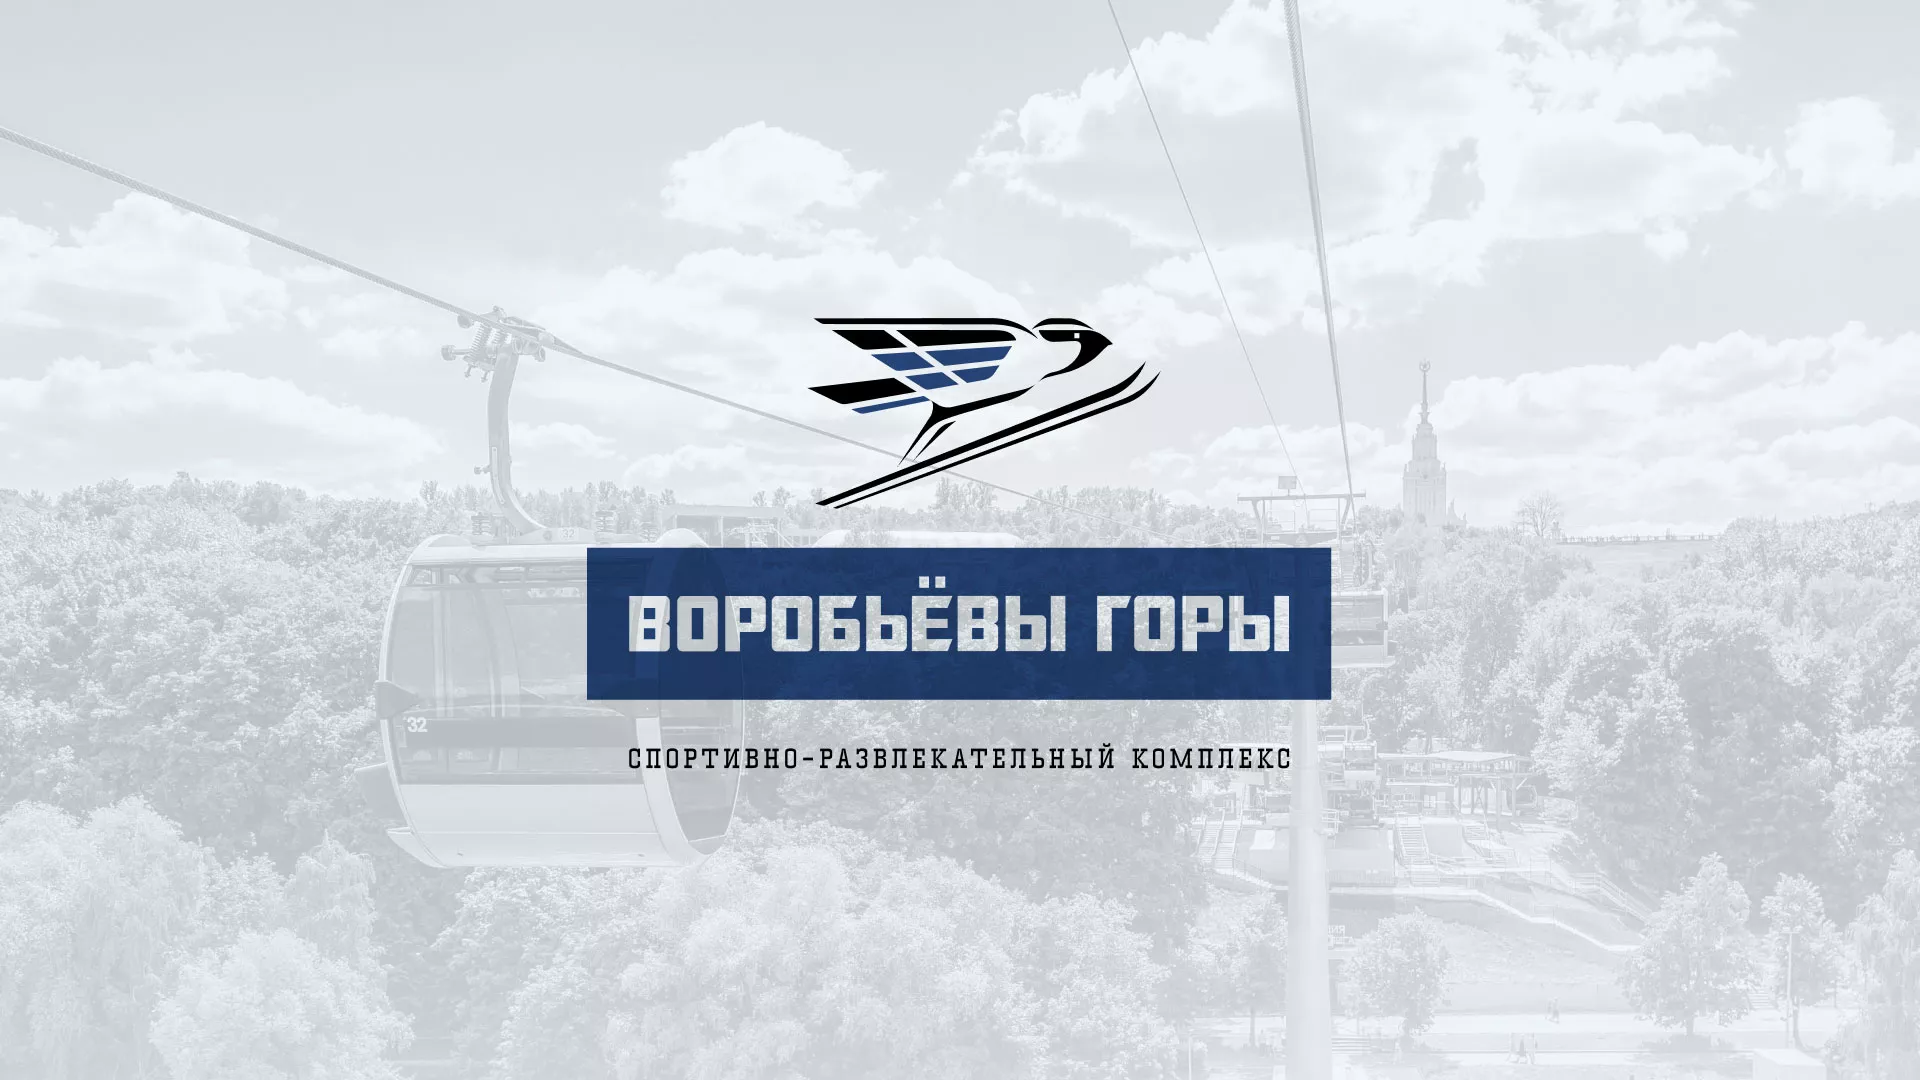 Разработка сайта в Новосибирске для спортивно-развлекательного комплекса «Воробьёвы горы»